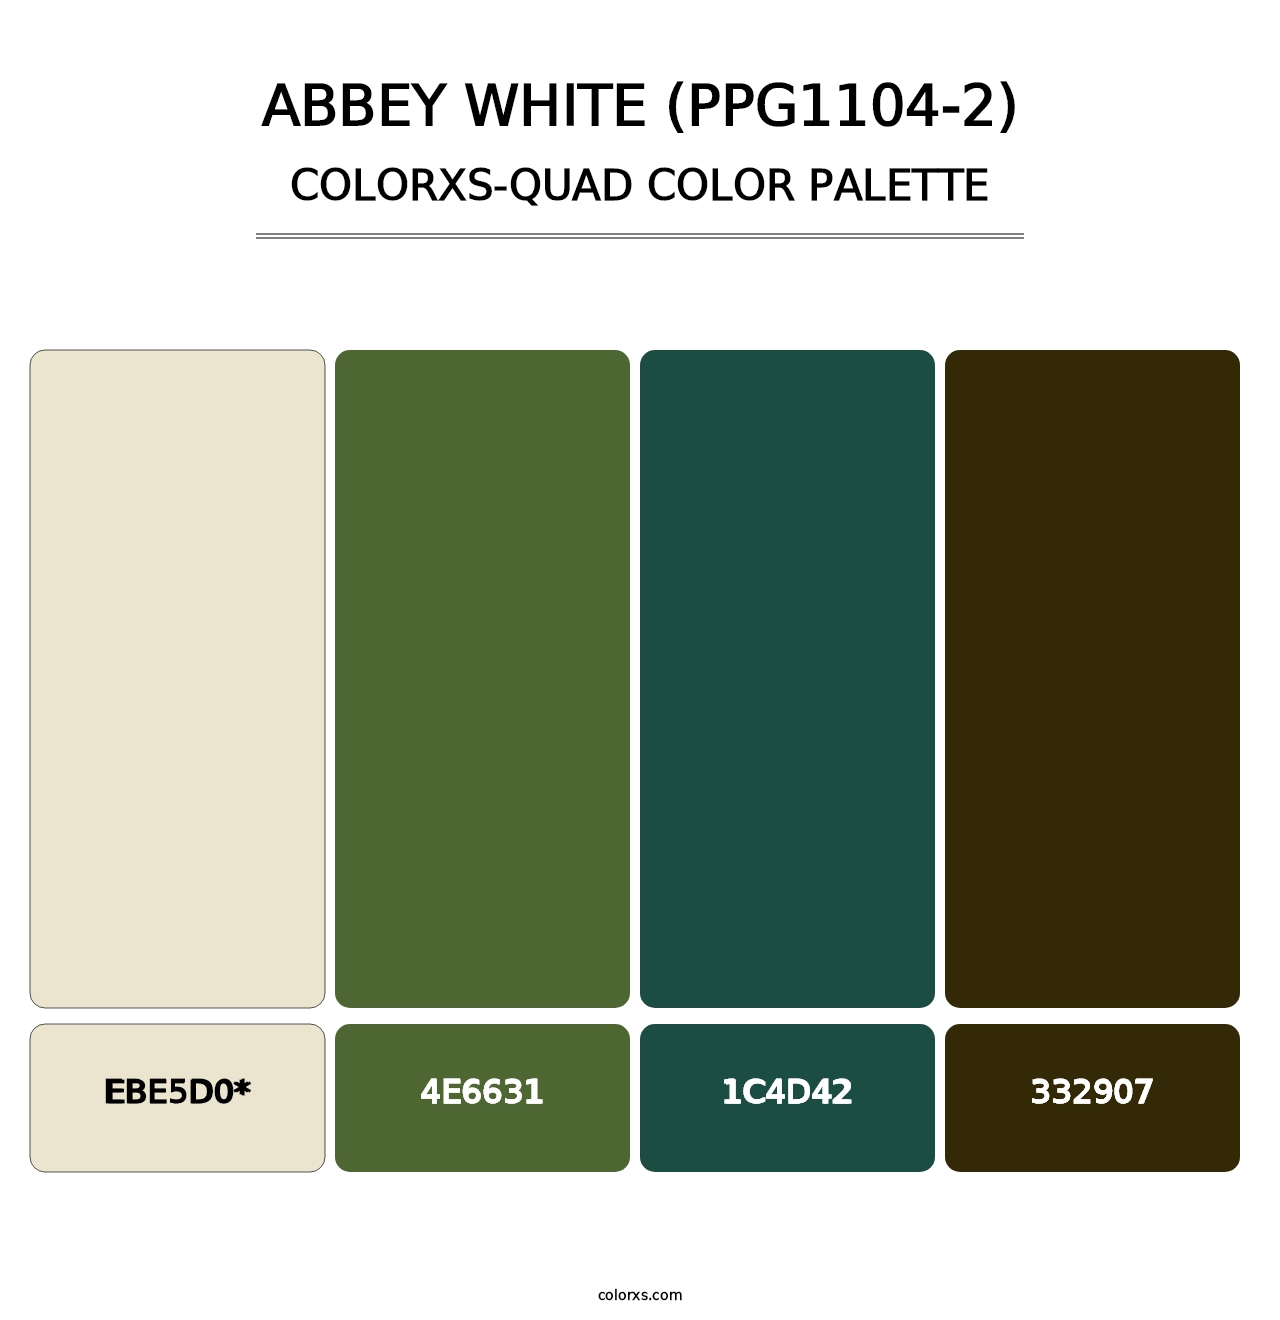 Abbey White (PPG1104-2) - Colorxs Quad Palette